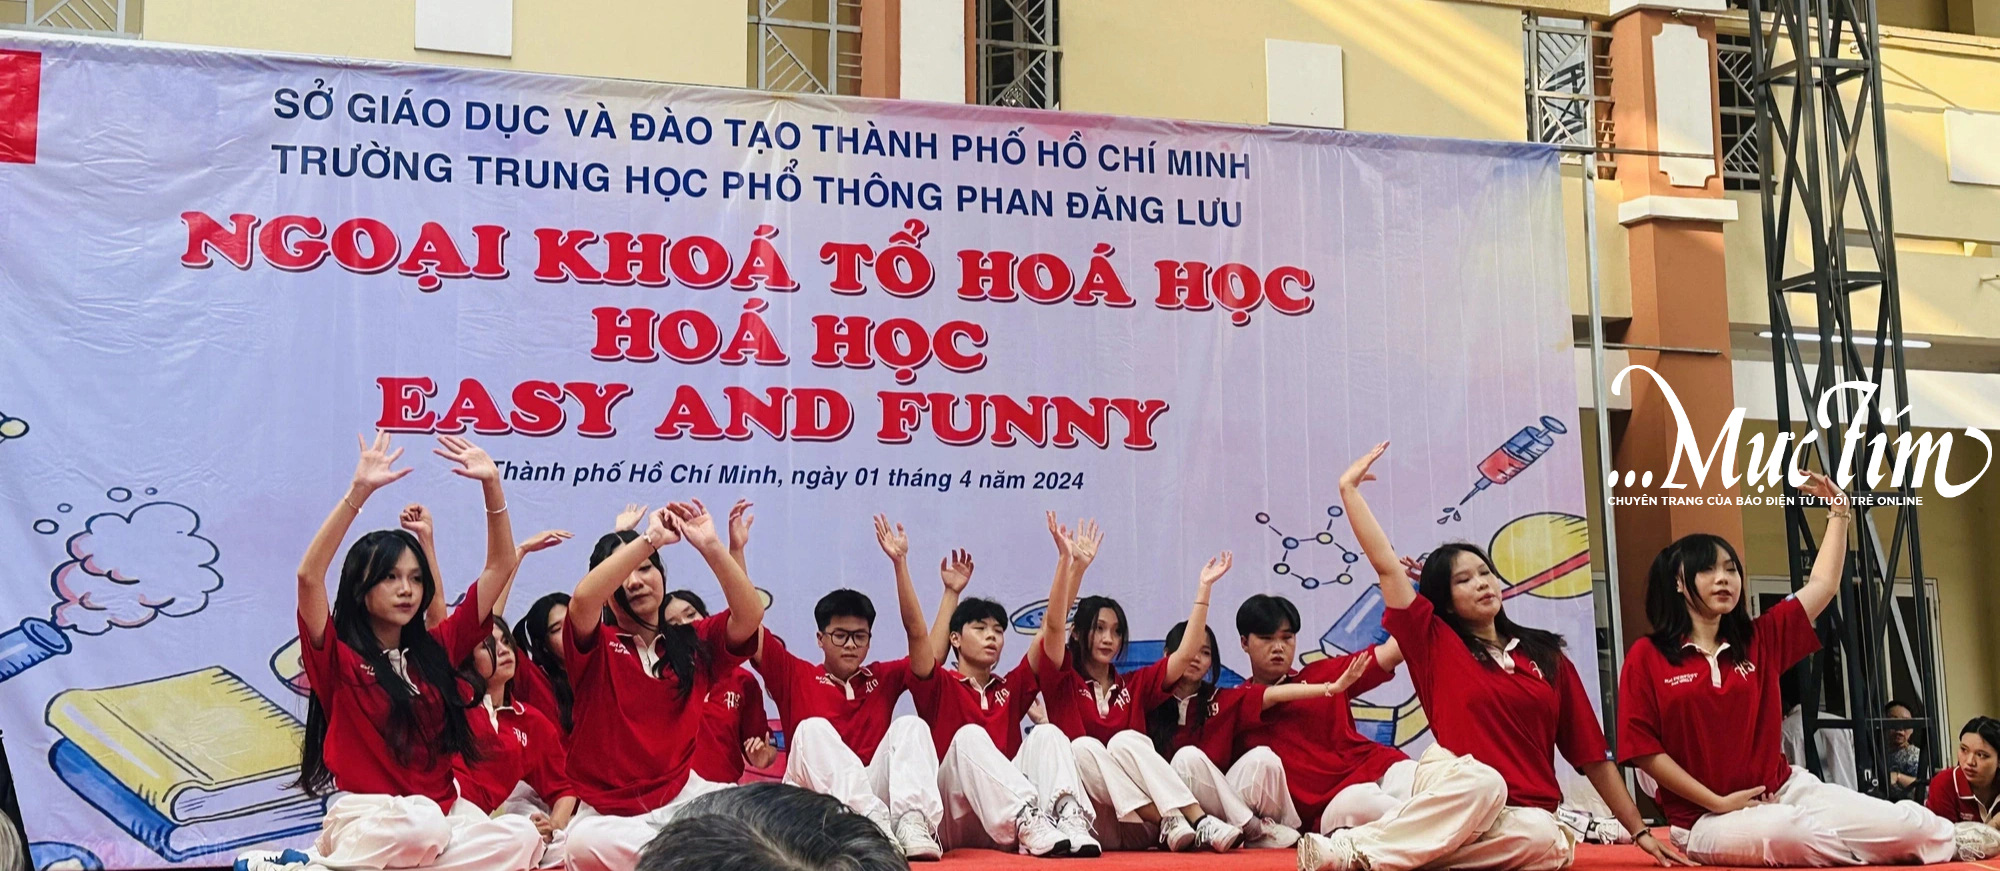 Hóa học ‘dễ và vui’ theo cách của teen Trường THPT Phan Đăng Lưu- Ảnh 2.